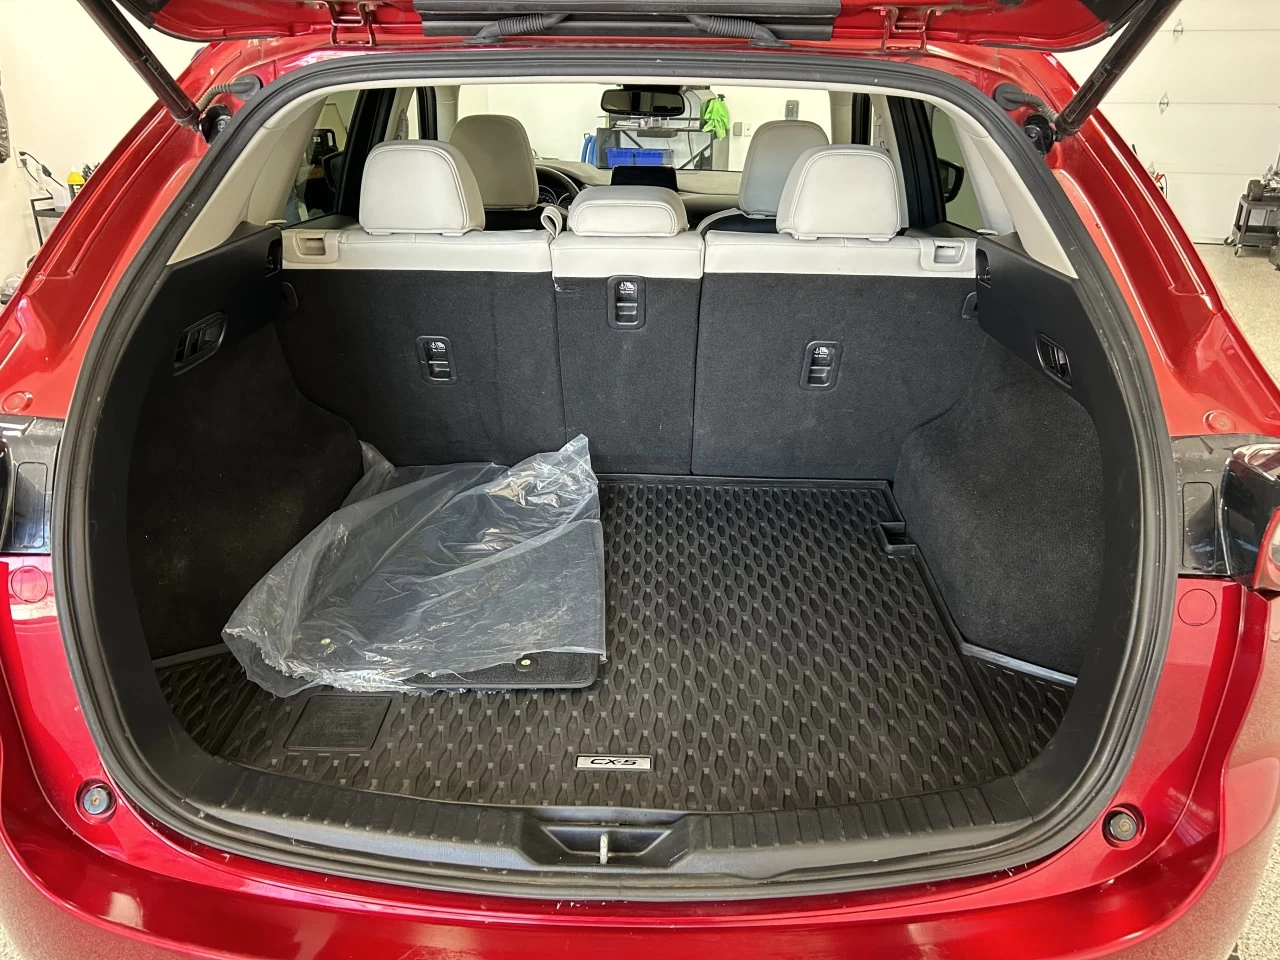 2019 Mazda CX-5 GT Image principale